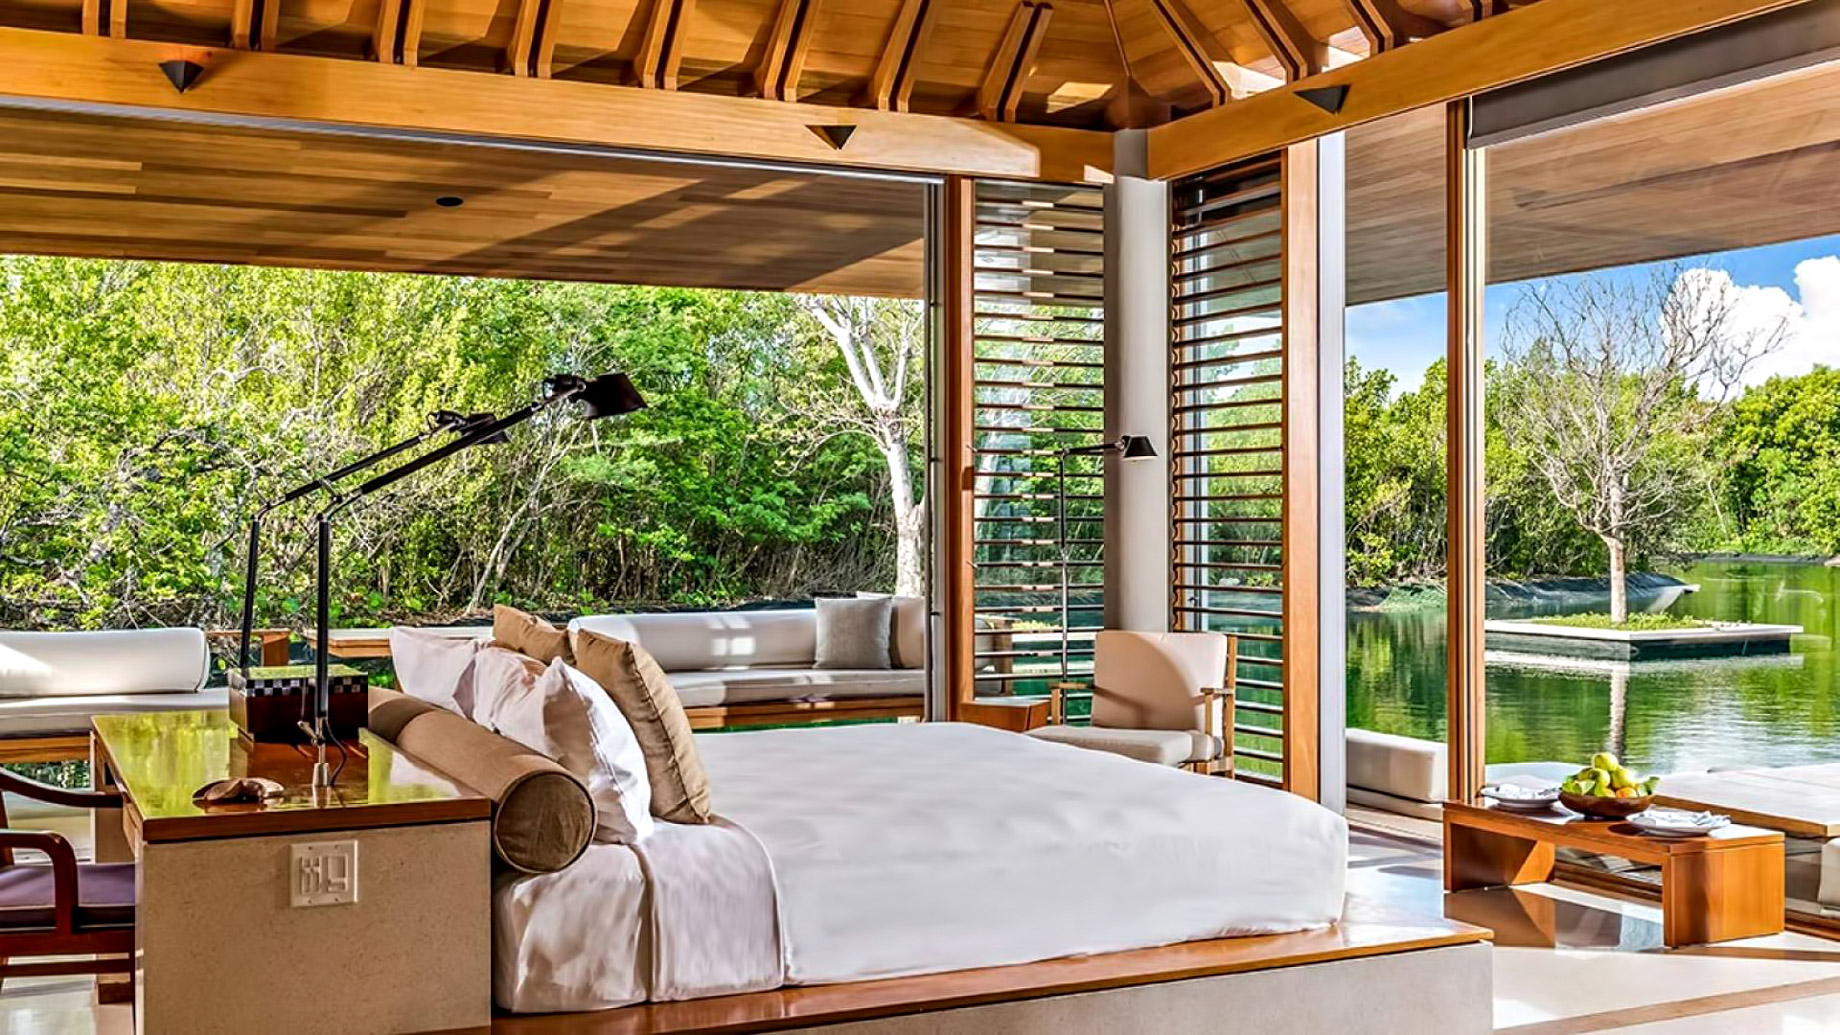 Amanyara Resort – Providenciales, Turks and Caicos Islands – 3 Bedroom Tranquility Villa Bedroom